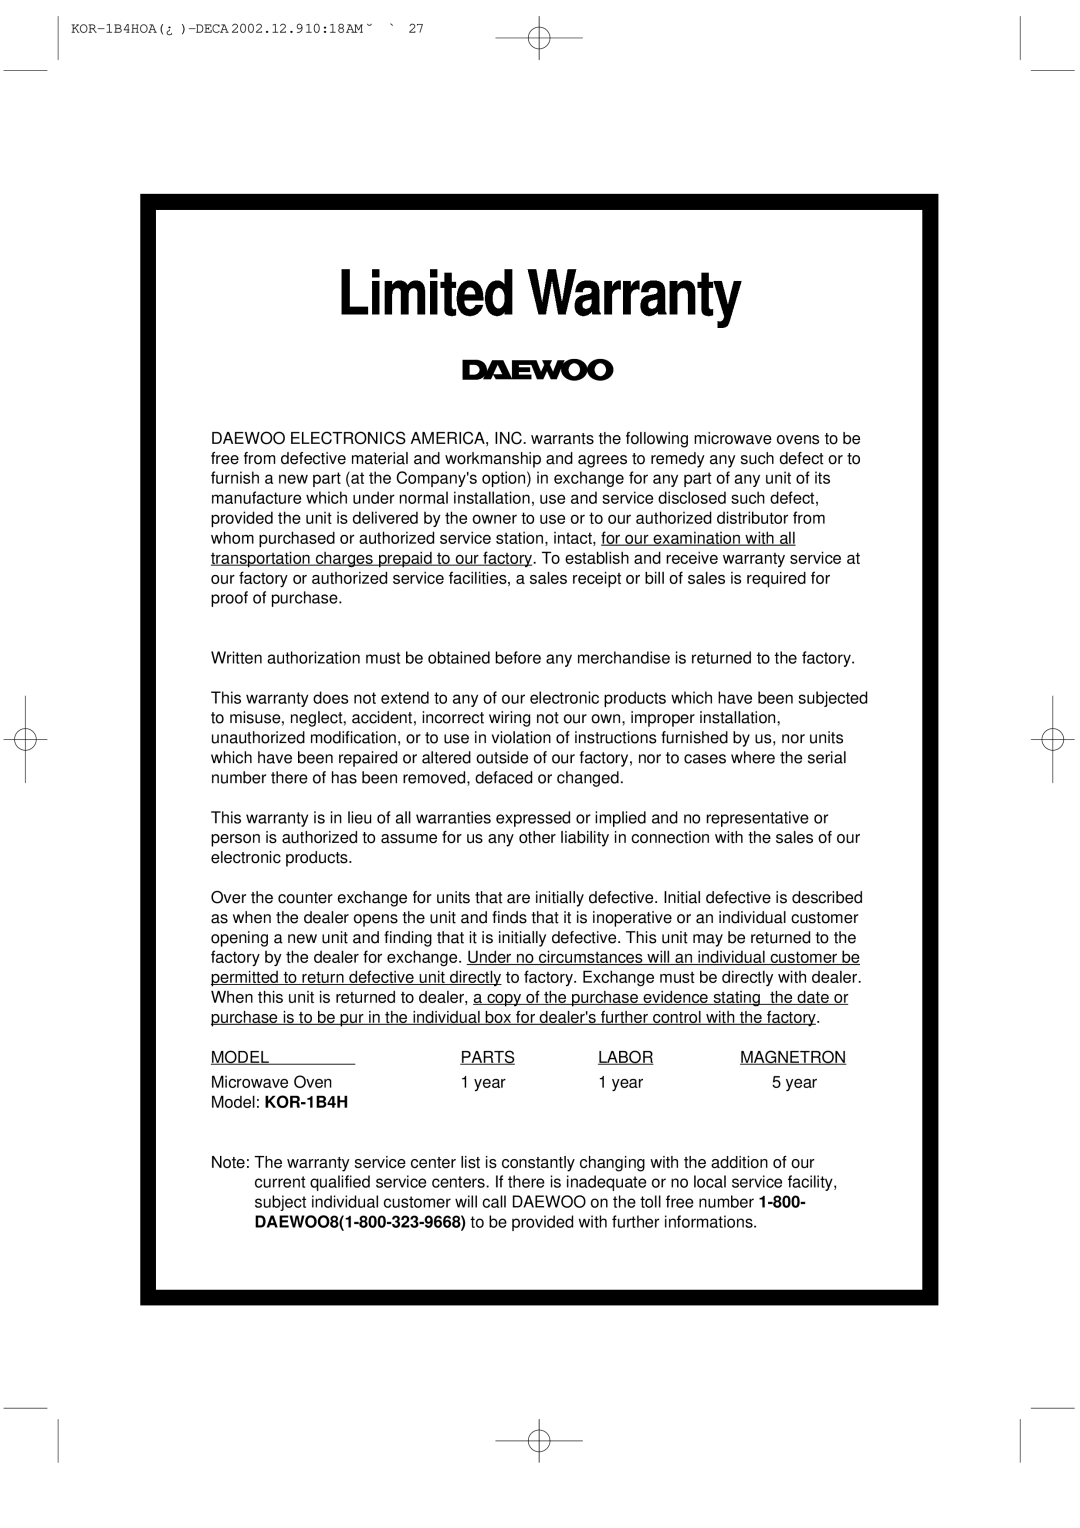 Daewoo manual Limited Warranty, Model KOR-1B4H 